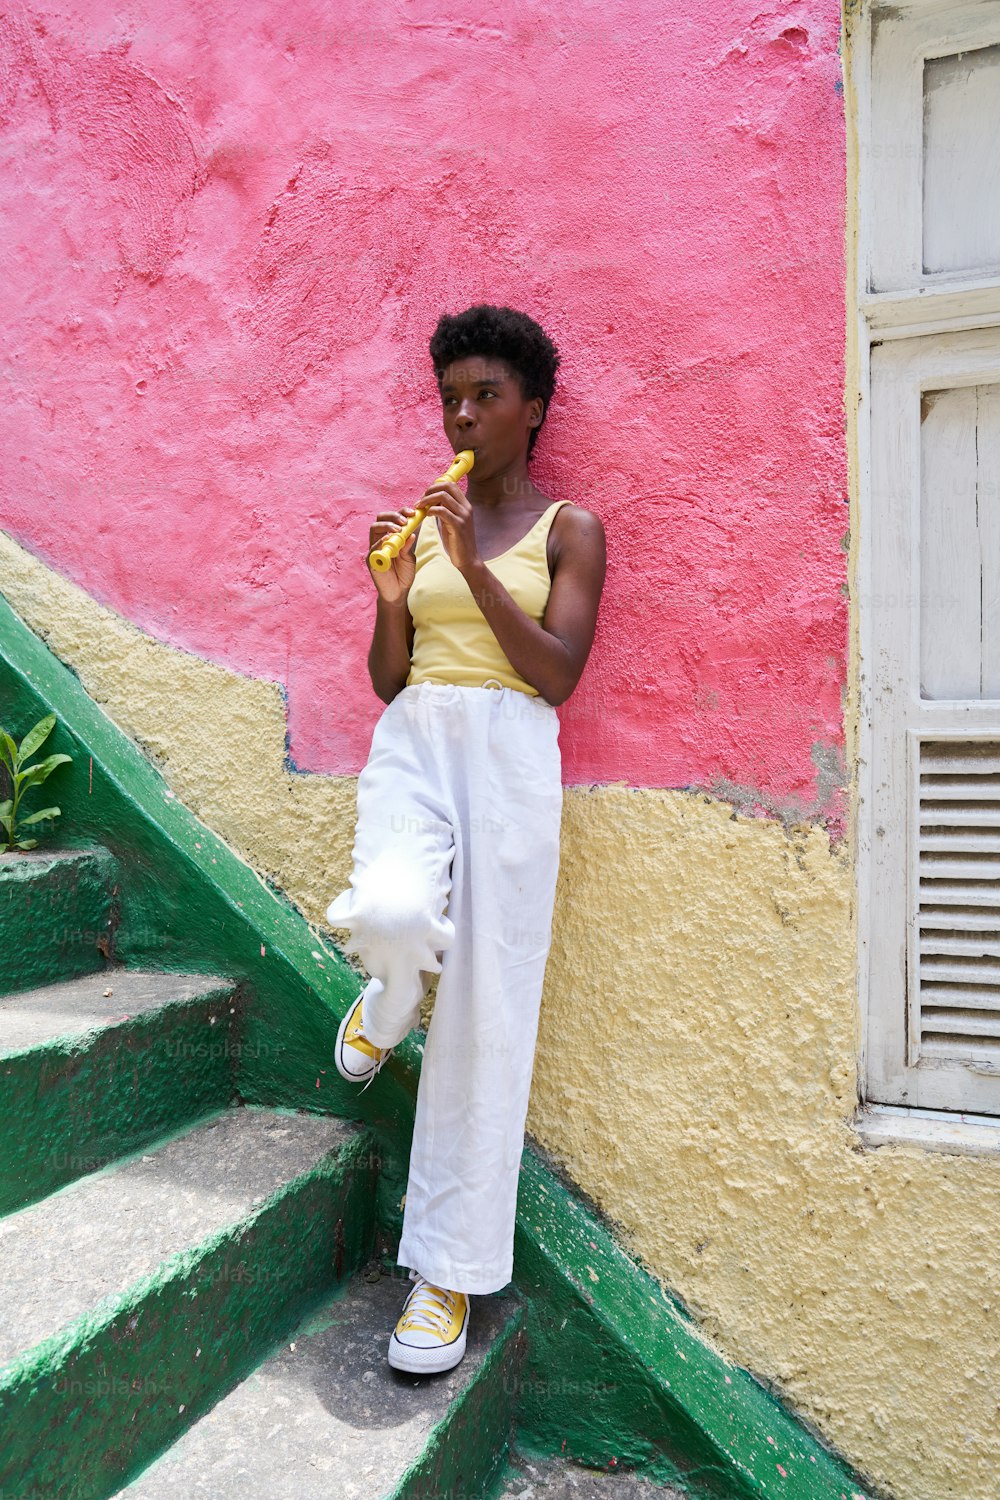 Une femme est assise sur les marches en train de manger une banane